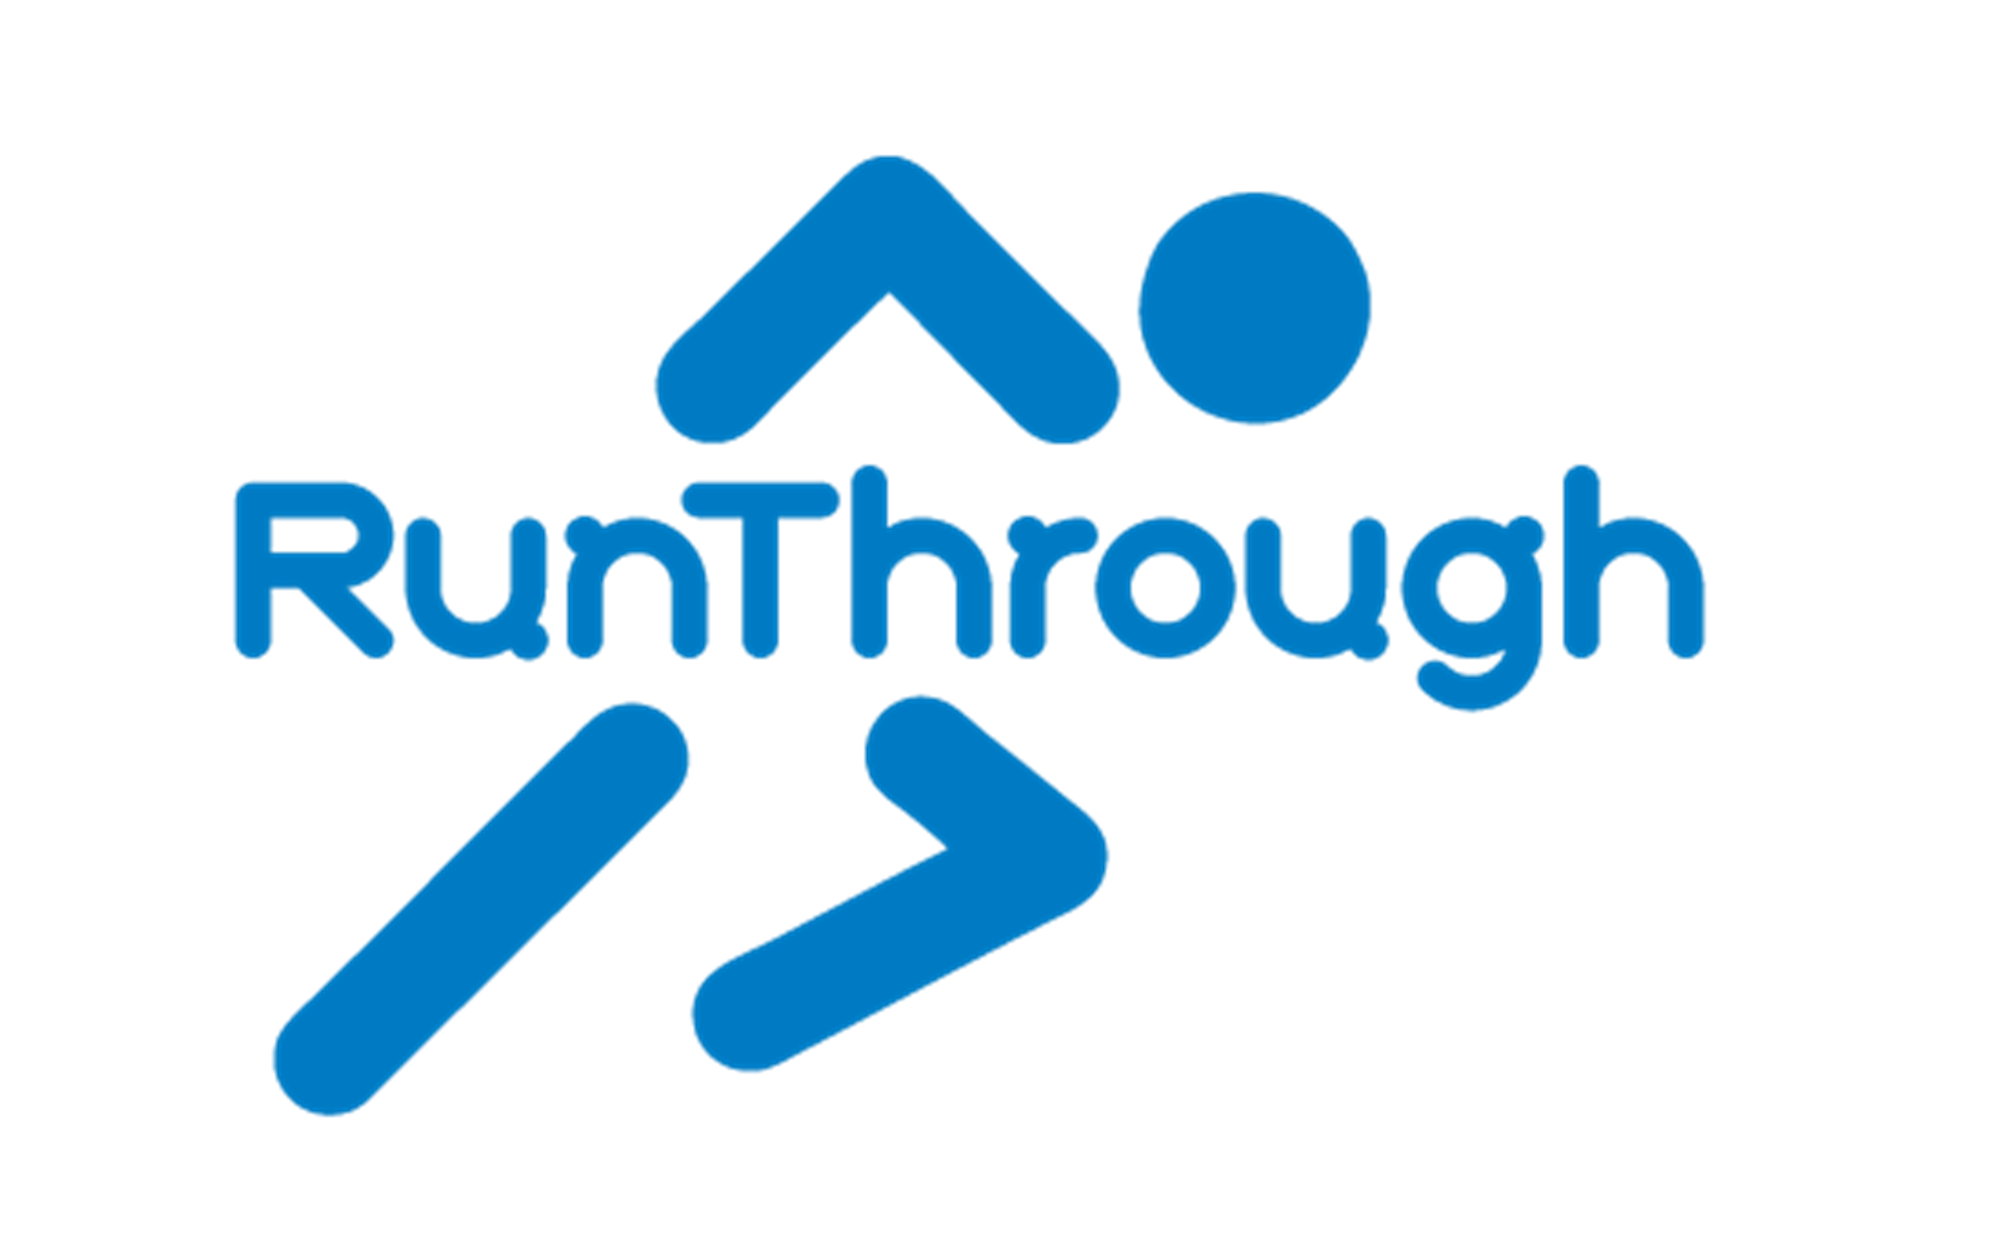 Run through logo